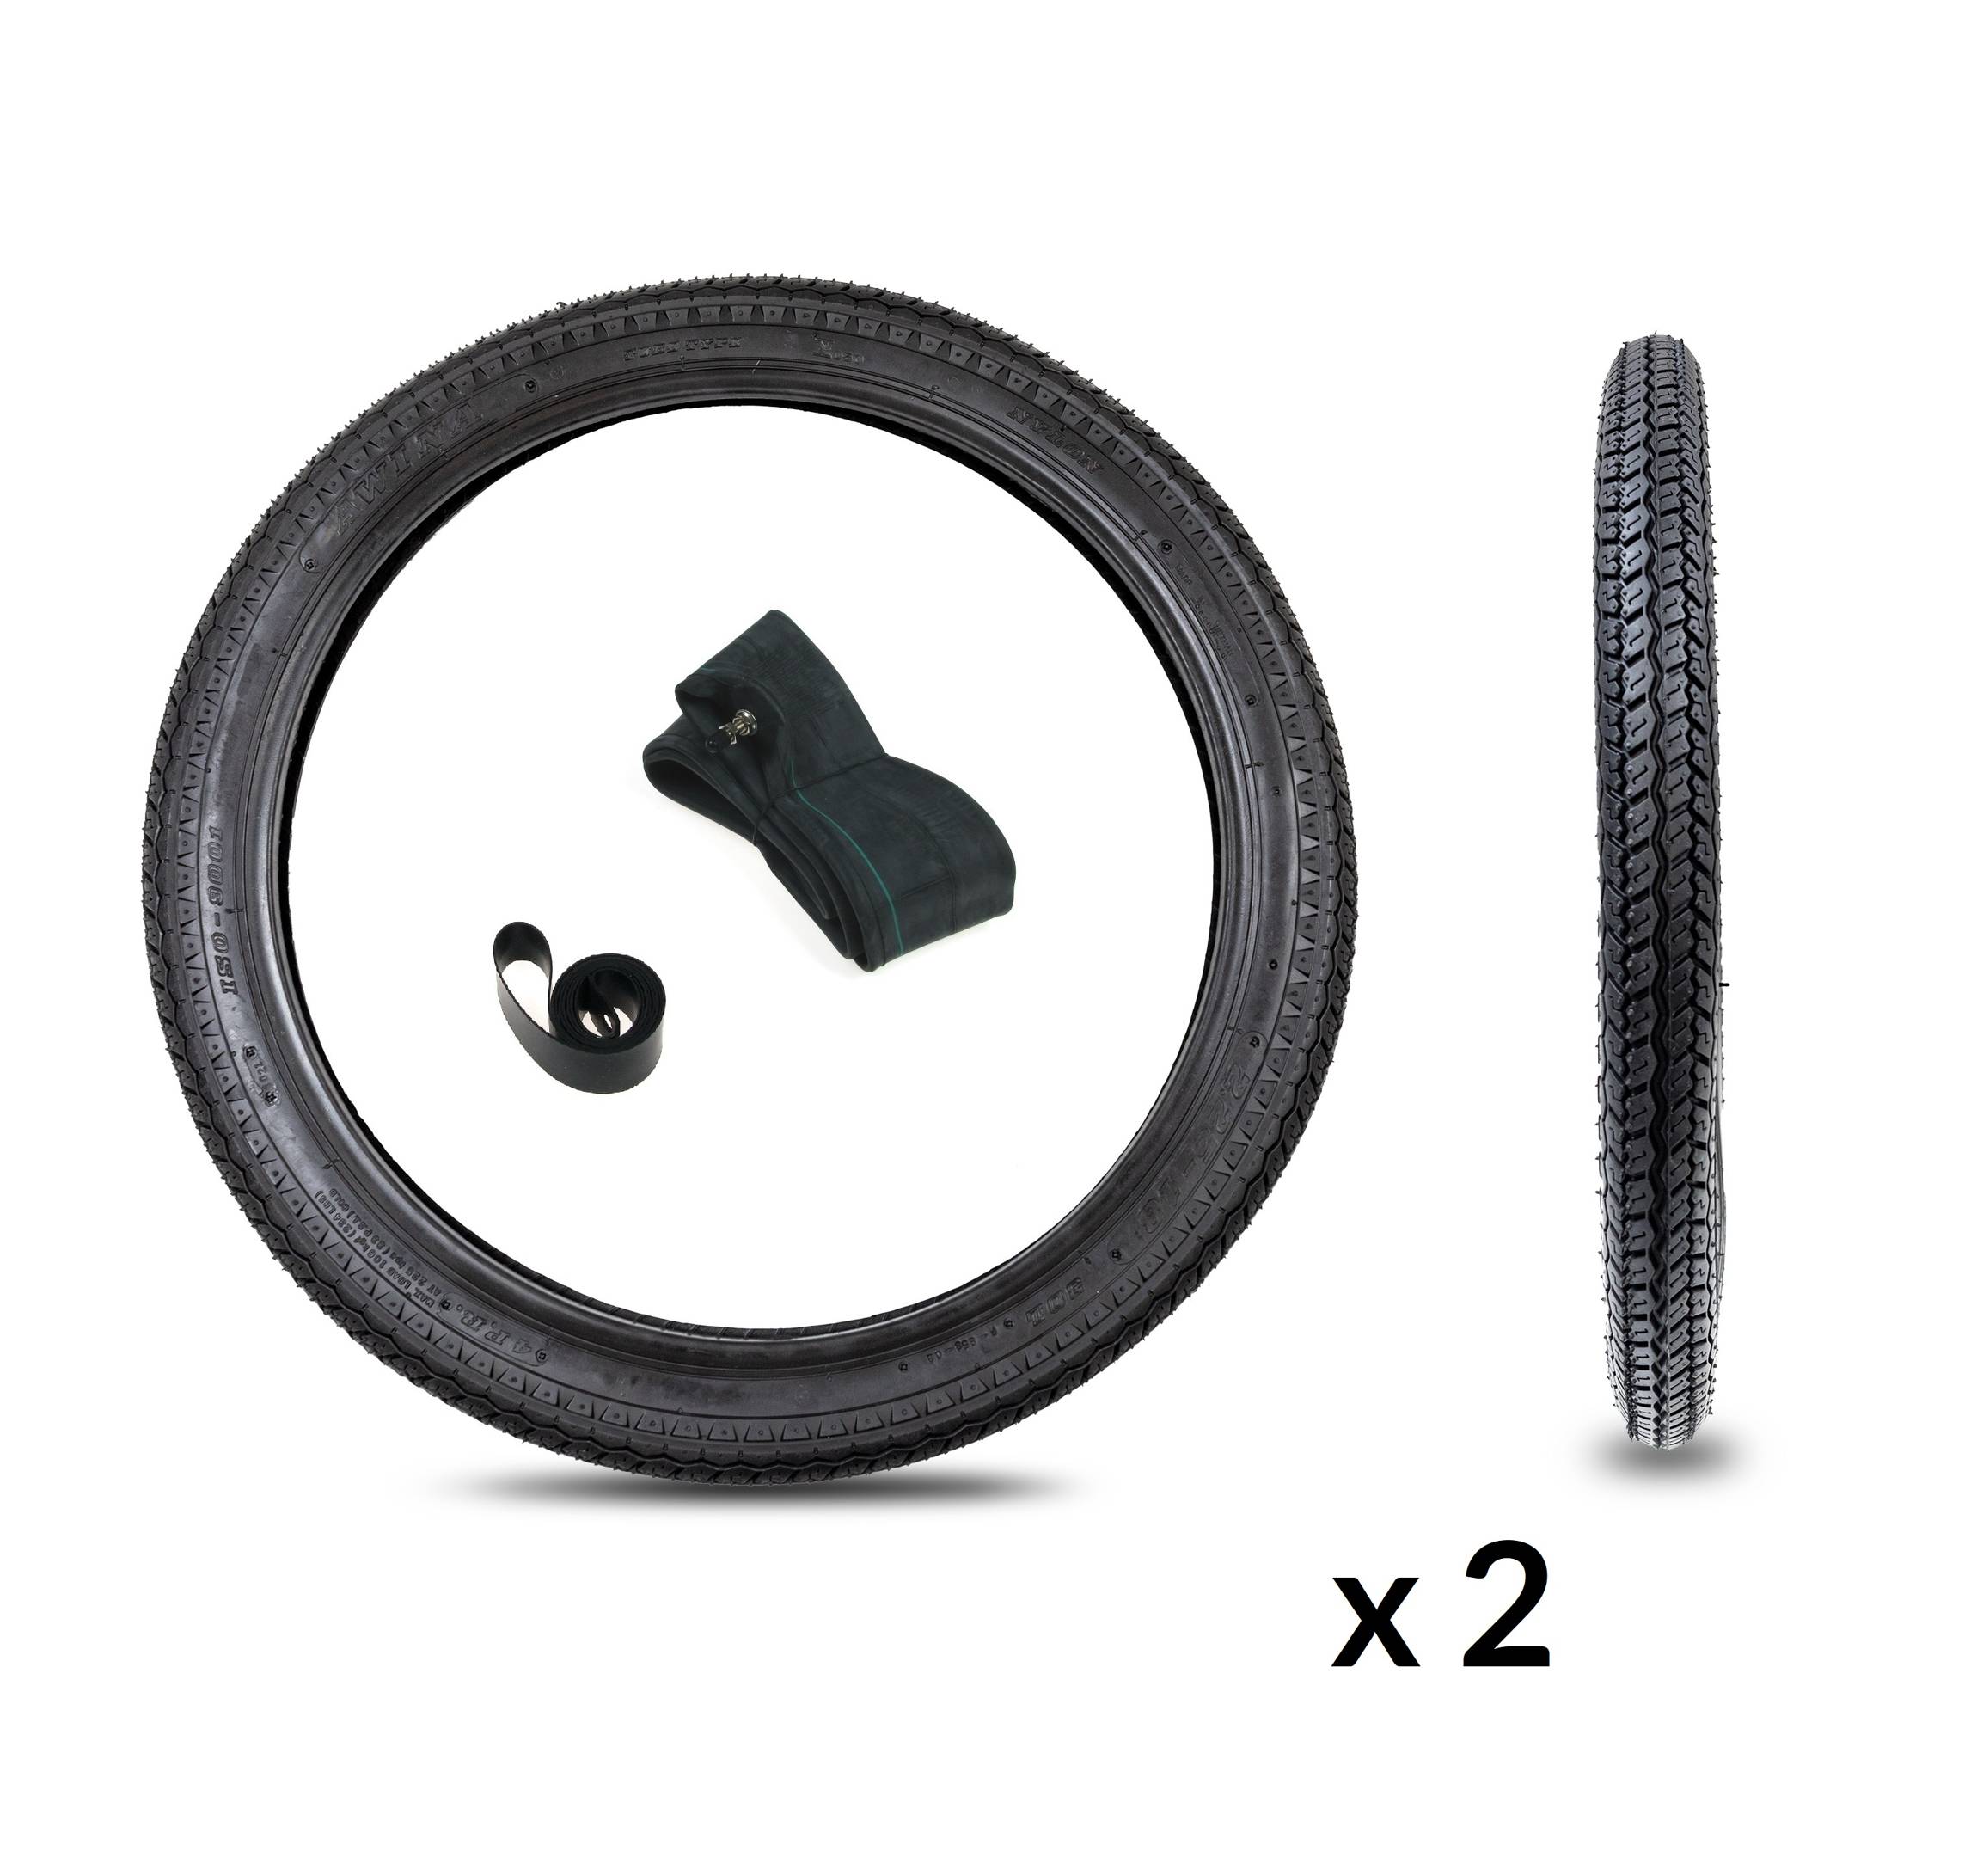 2x Reifen Schlauch Felgenband 2.25x18 für Moped Mokick Kreidler